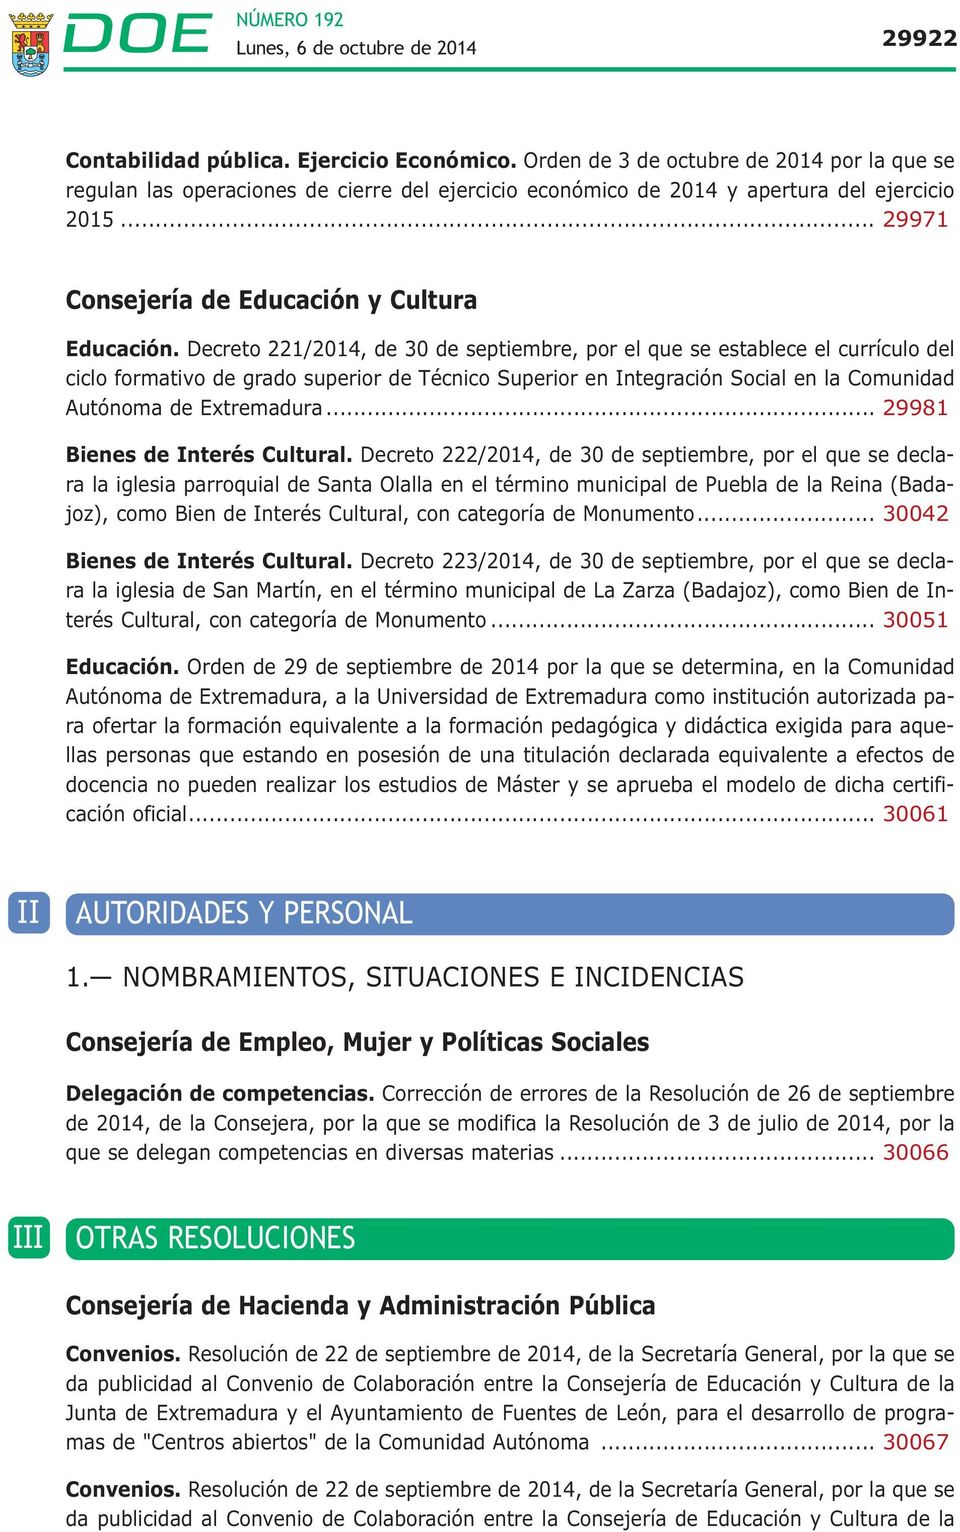 Decreto 221/2014, de 30 de septiembre, por el que se establece el currículo del ciclo formativo de grado superior de Técnico Superior en Integración Social en la Comunidad Autónoma de Extremadura.